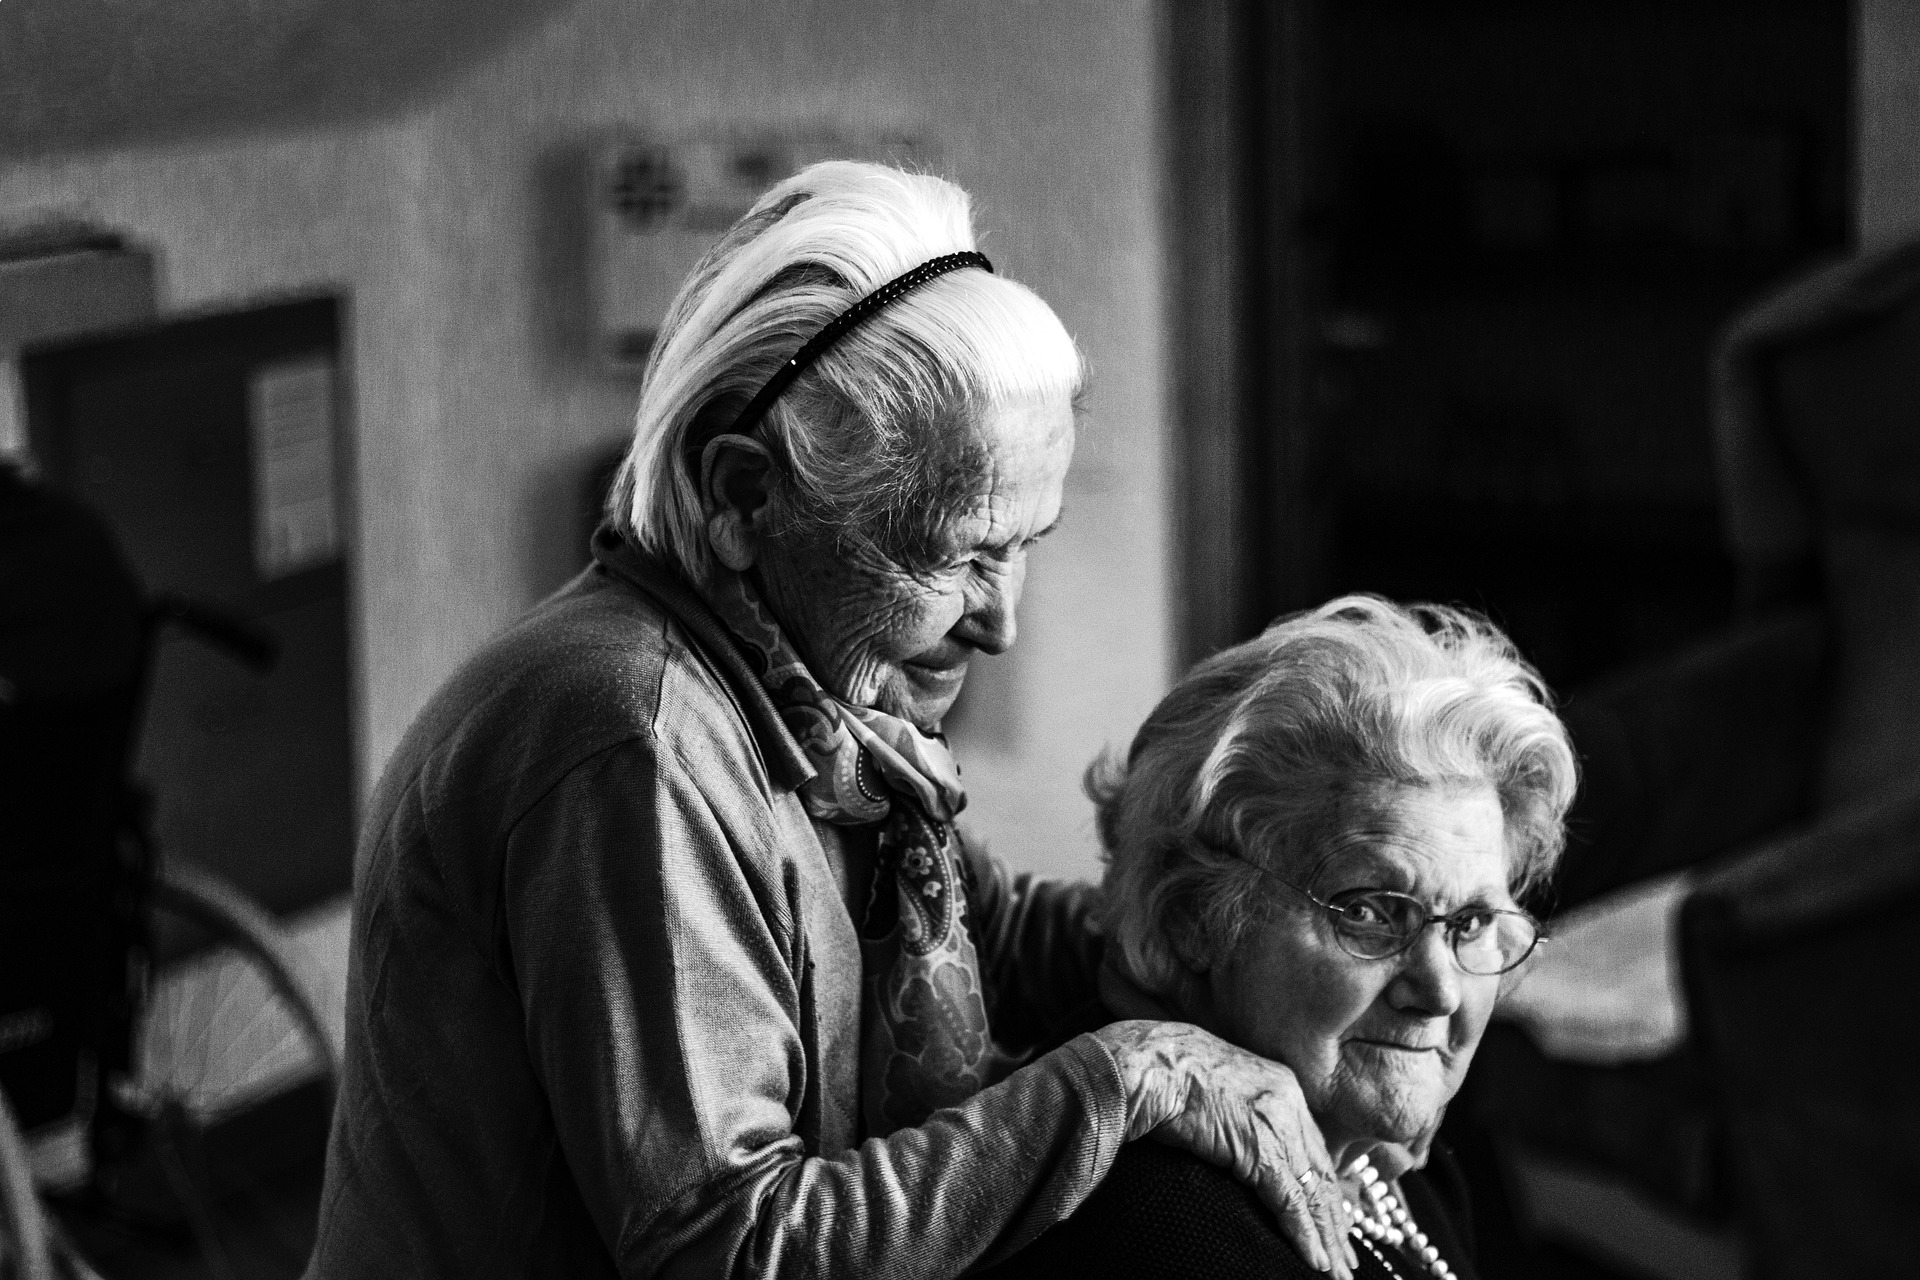 Résidences haut de gamme pour personnes âgées – Hermès Santé